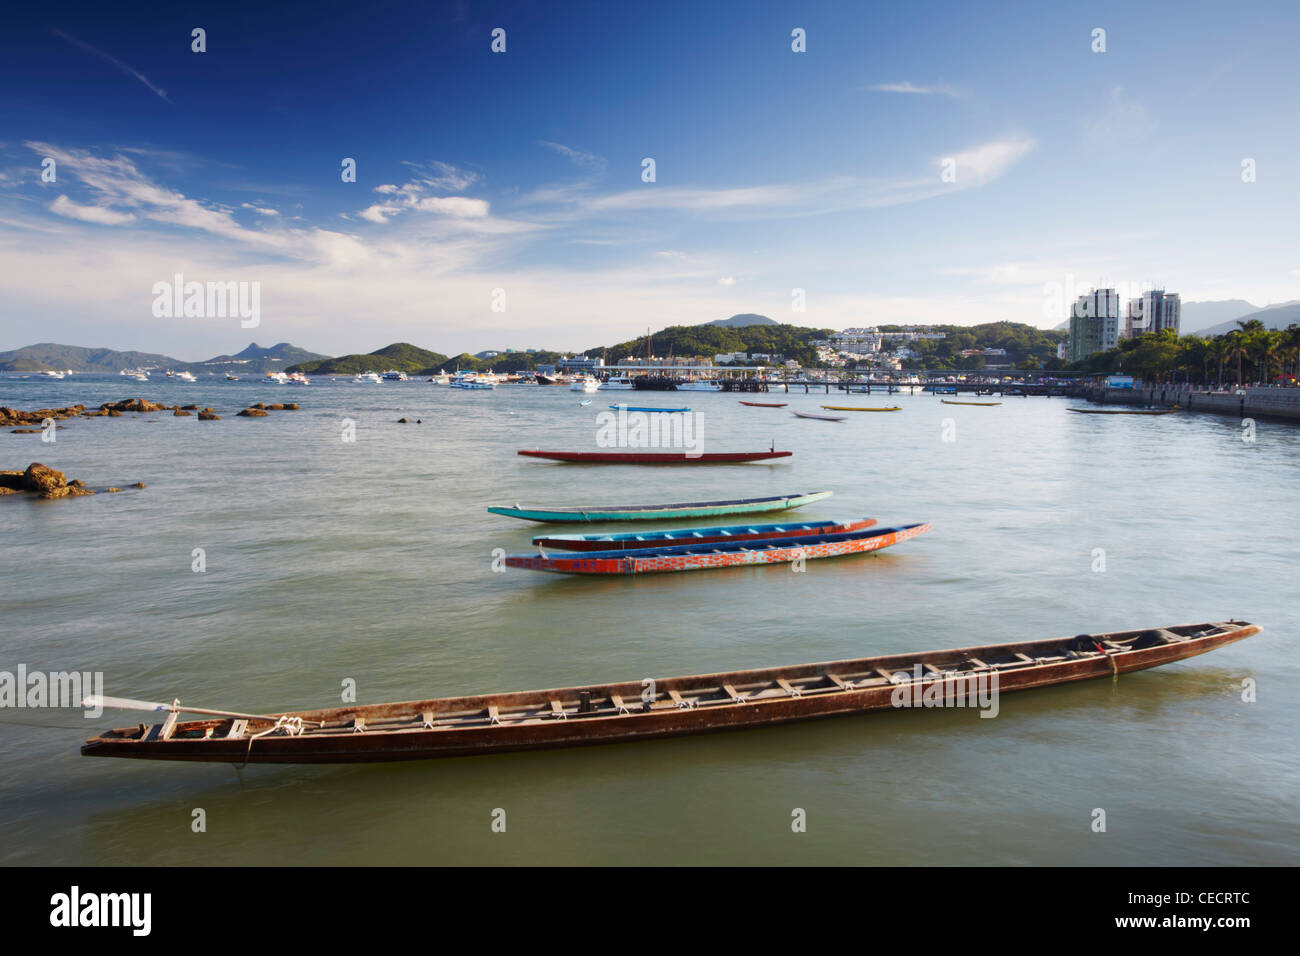 Dragon boats in Sai Kung harbour, New Territories, Hong Kong, China Stock Photo